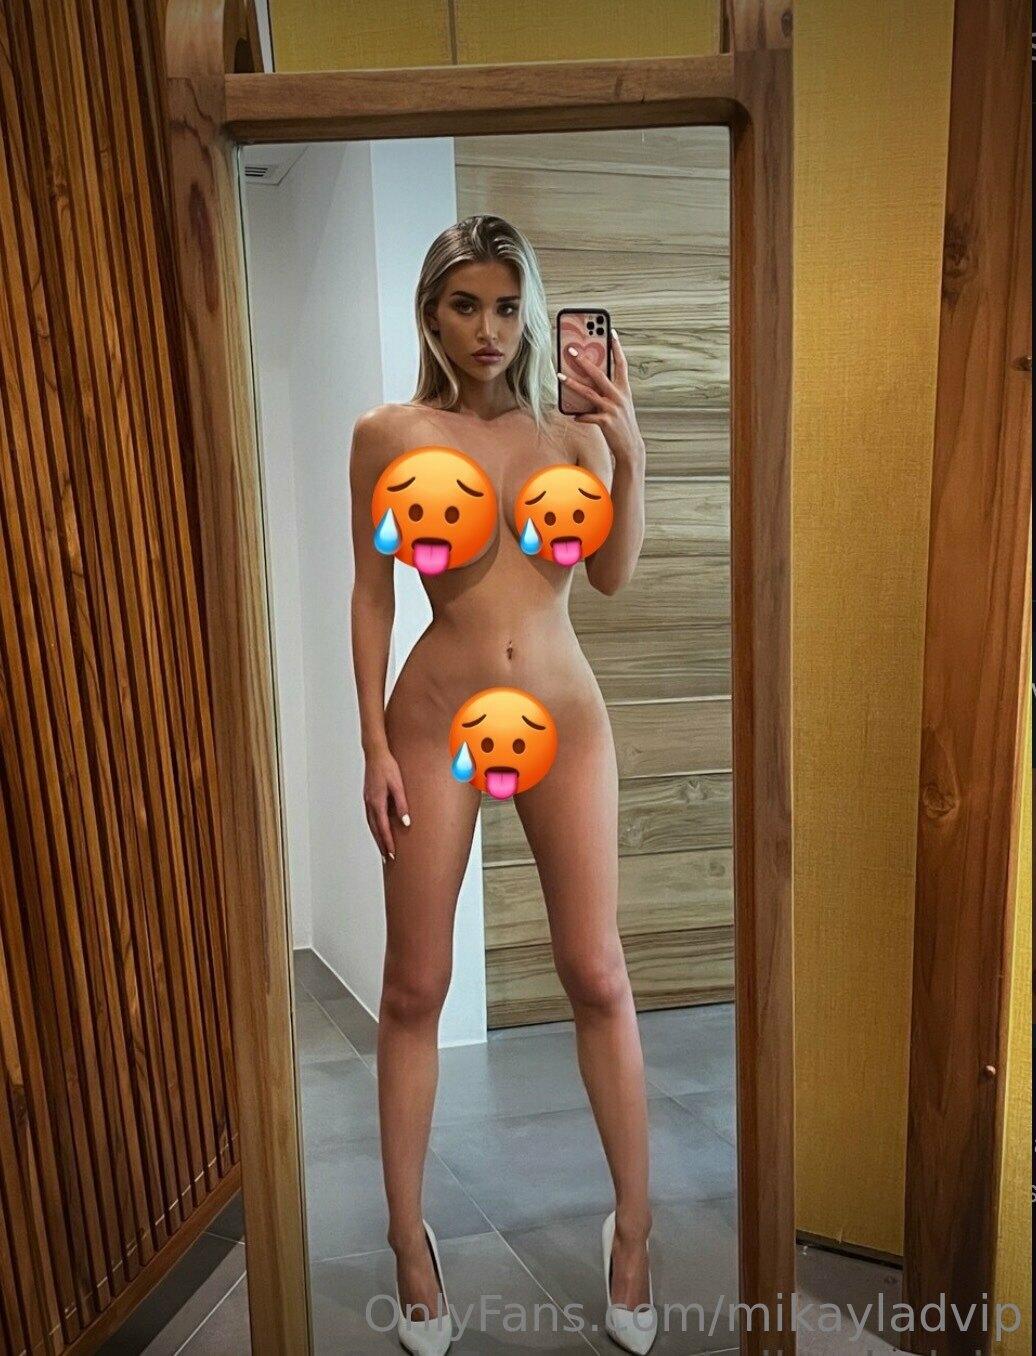 Mikayla Demaiter mikayla demaiter Nude OnlyFans Leaks 5 Photos.jpg